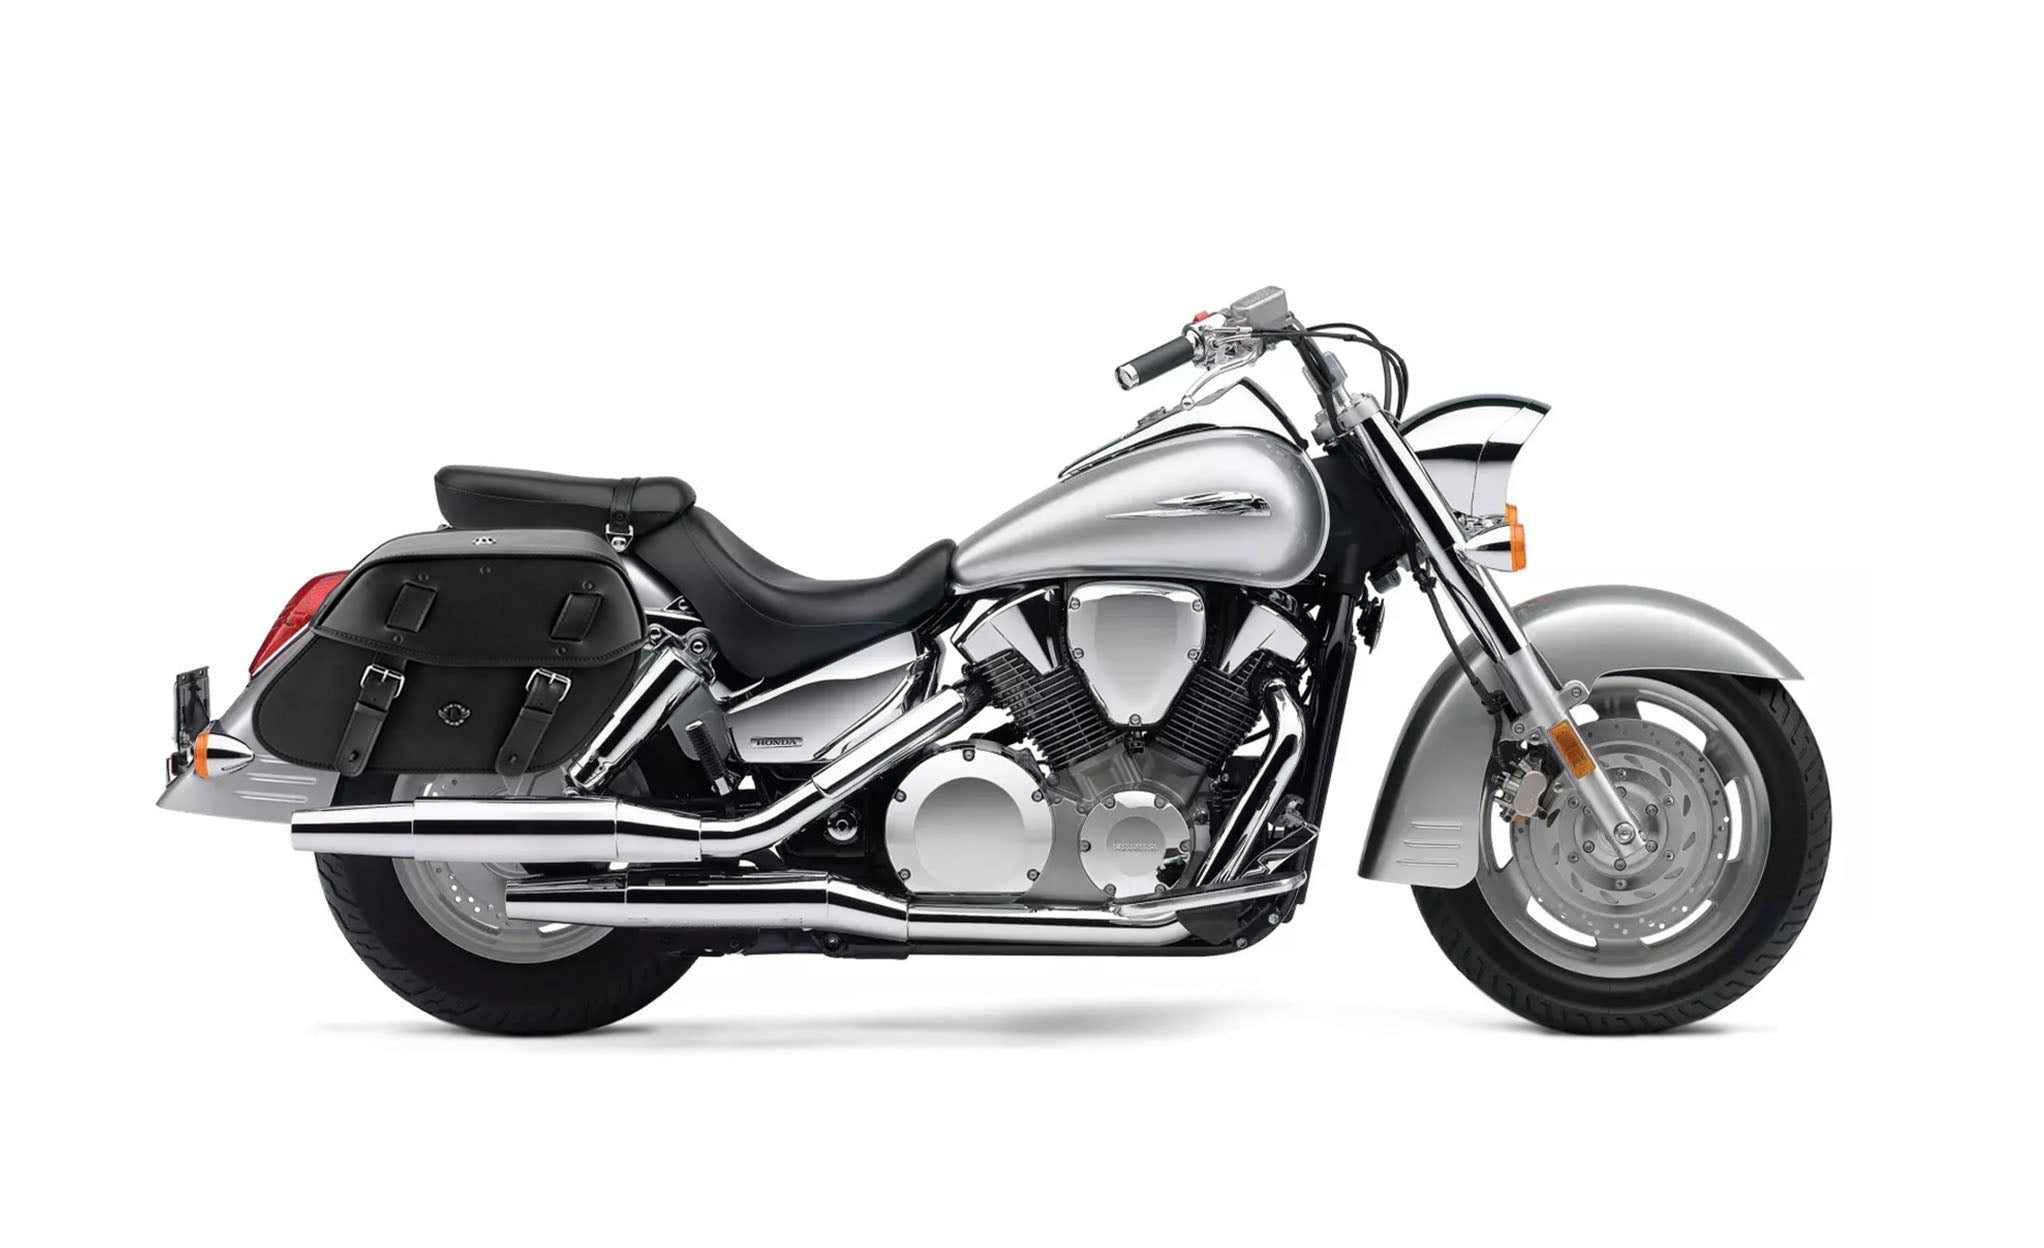 Viking Odin Large Honda Vtx 1300 S Leather Motorcycle Saddlebags on Bike Photo @expand